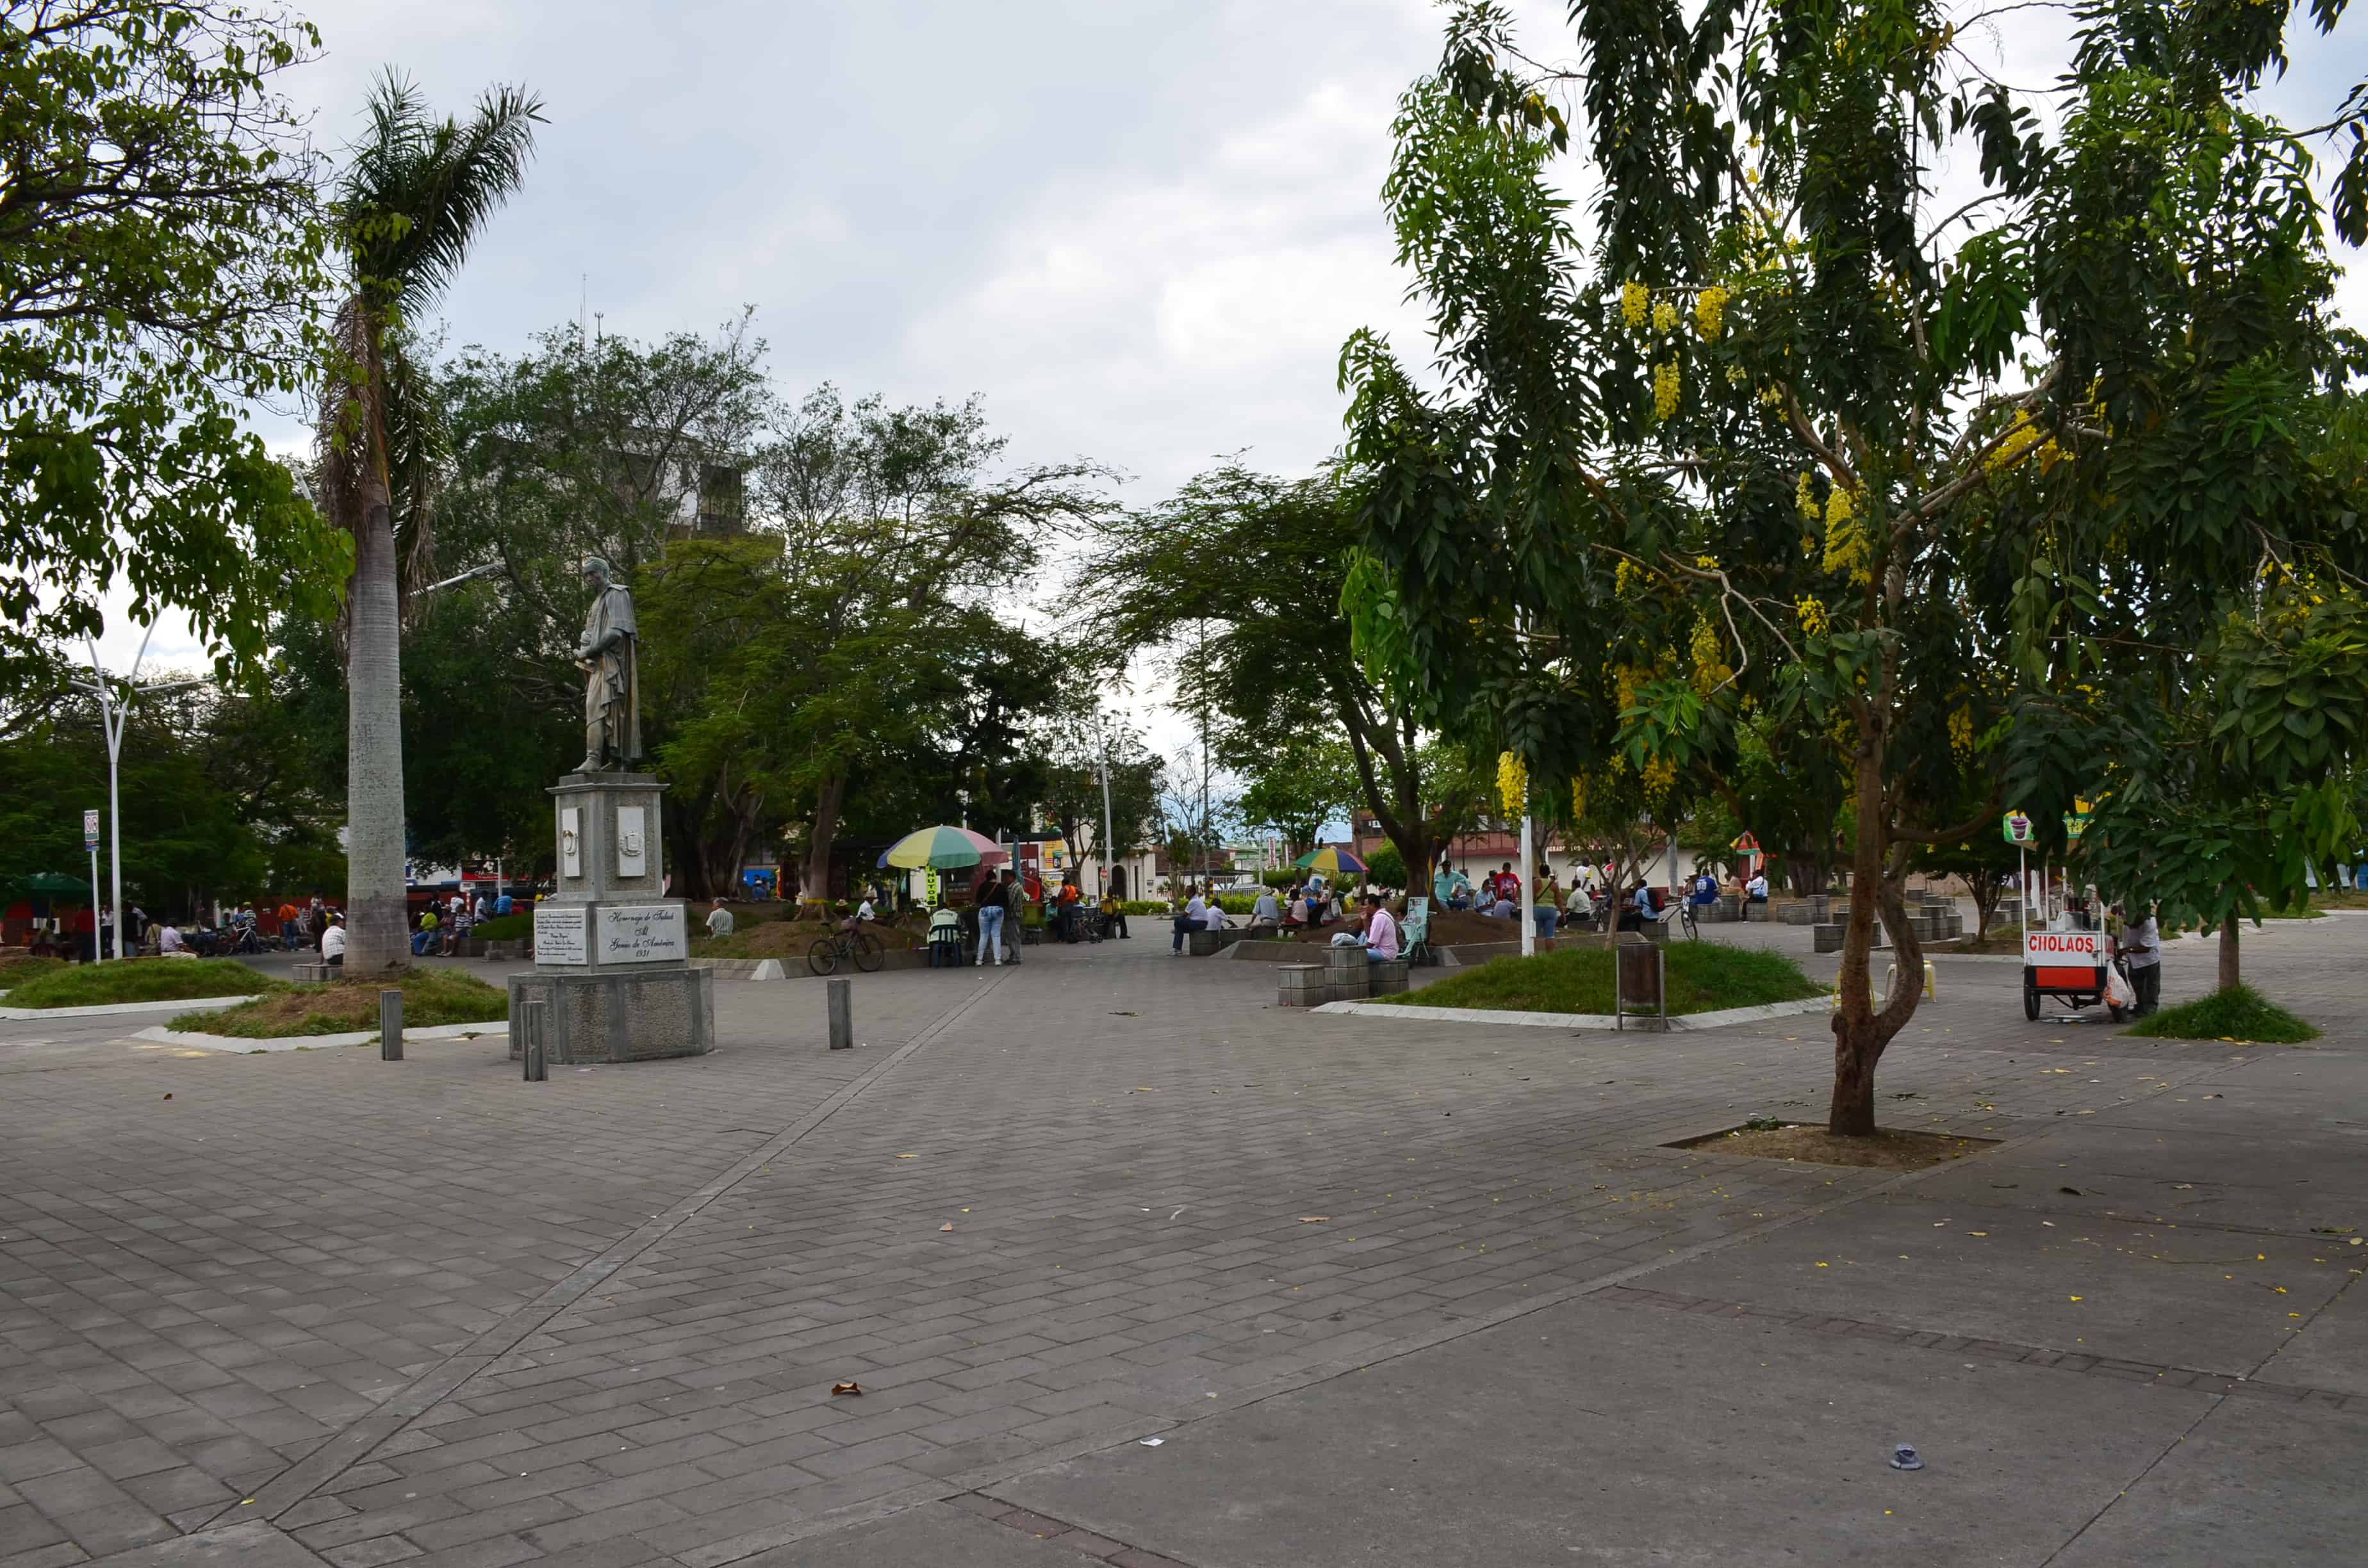 Plaza de Boyacá in Tuluá, Valle del Cauca, Colombia